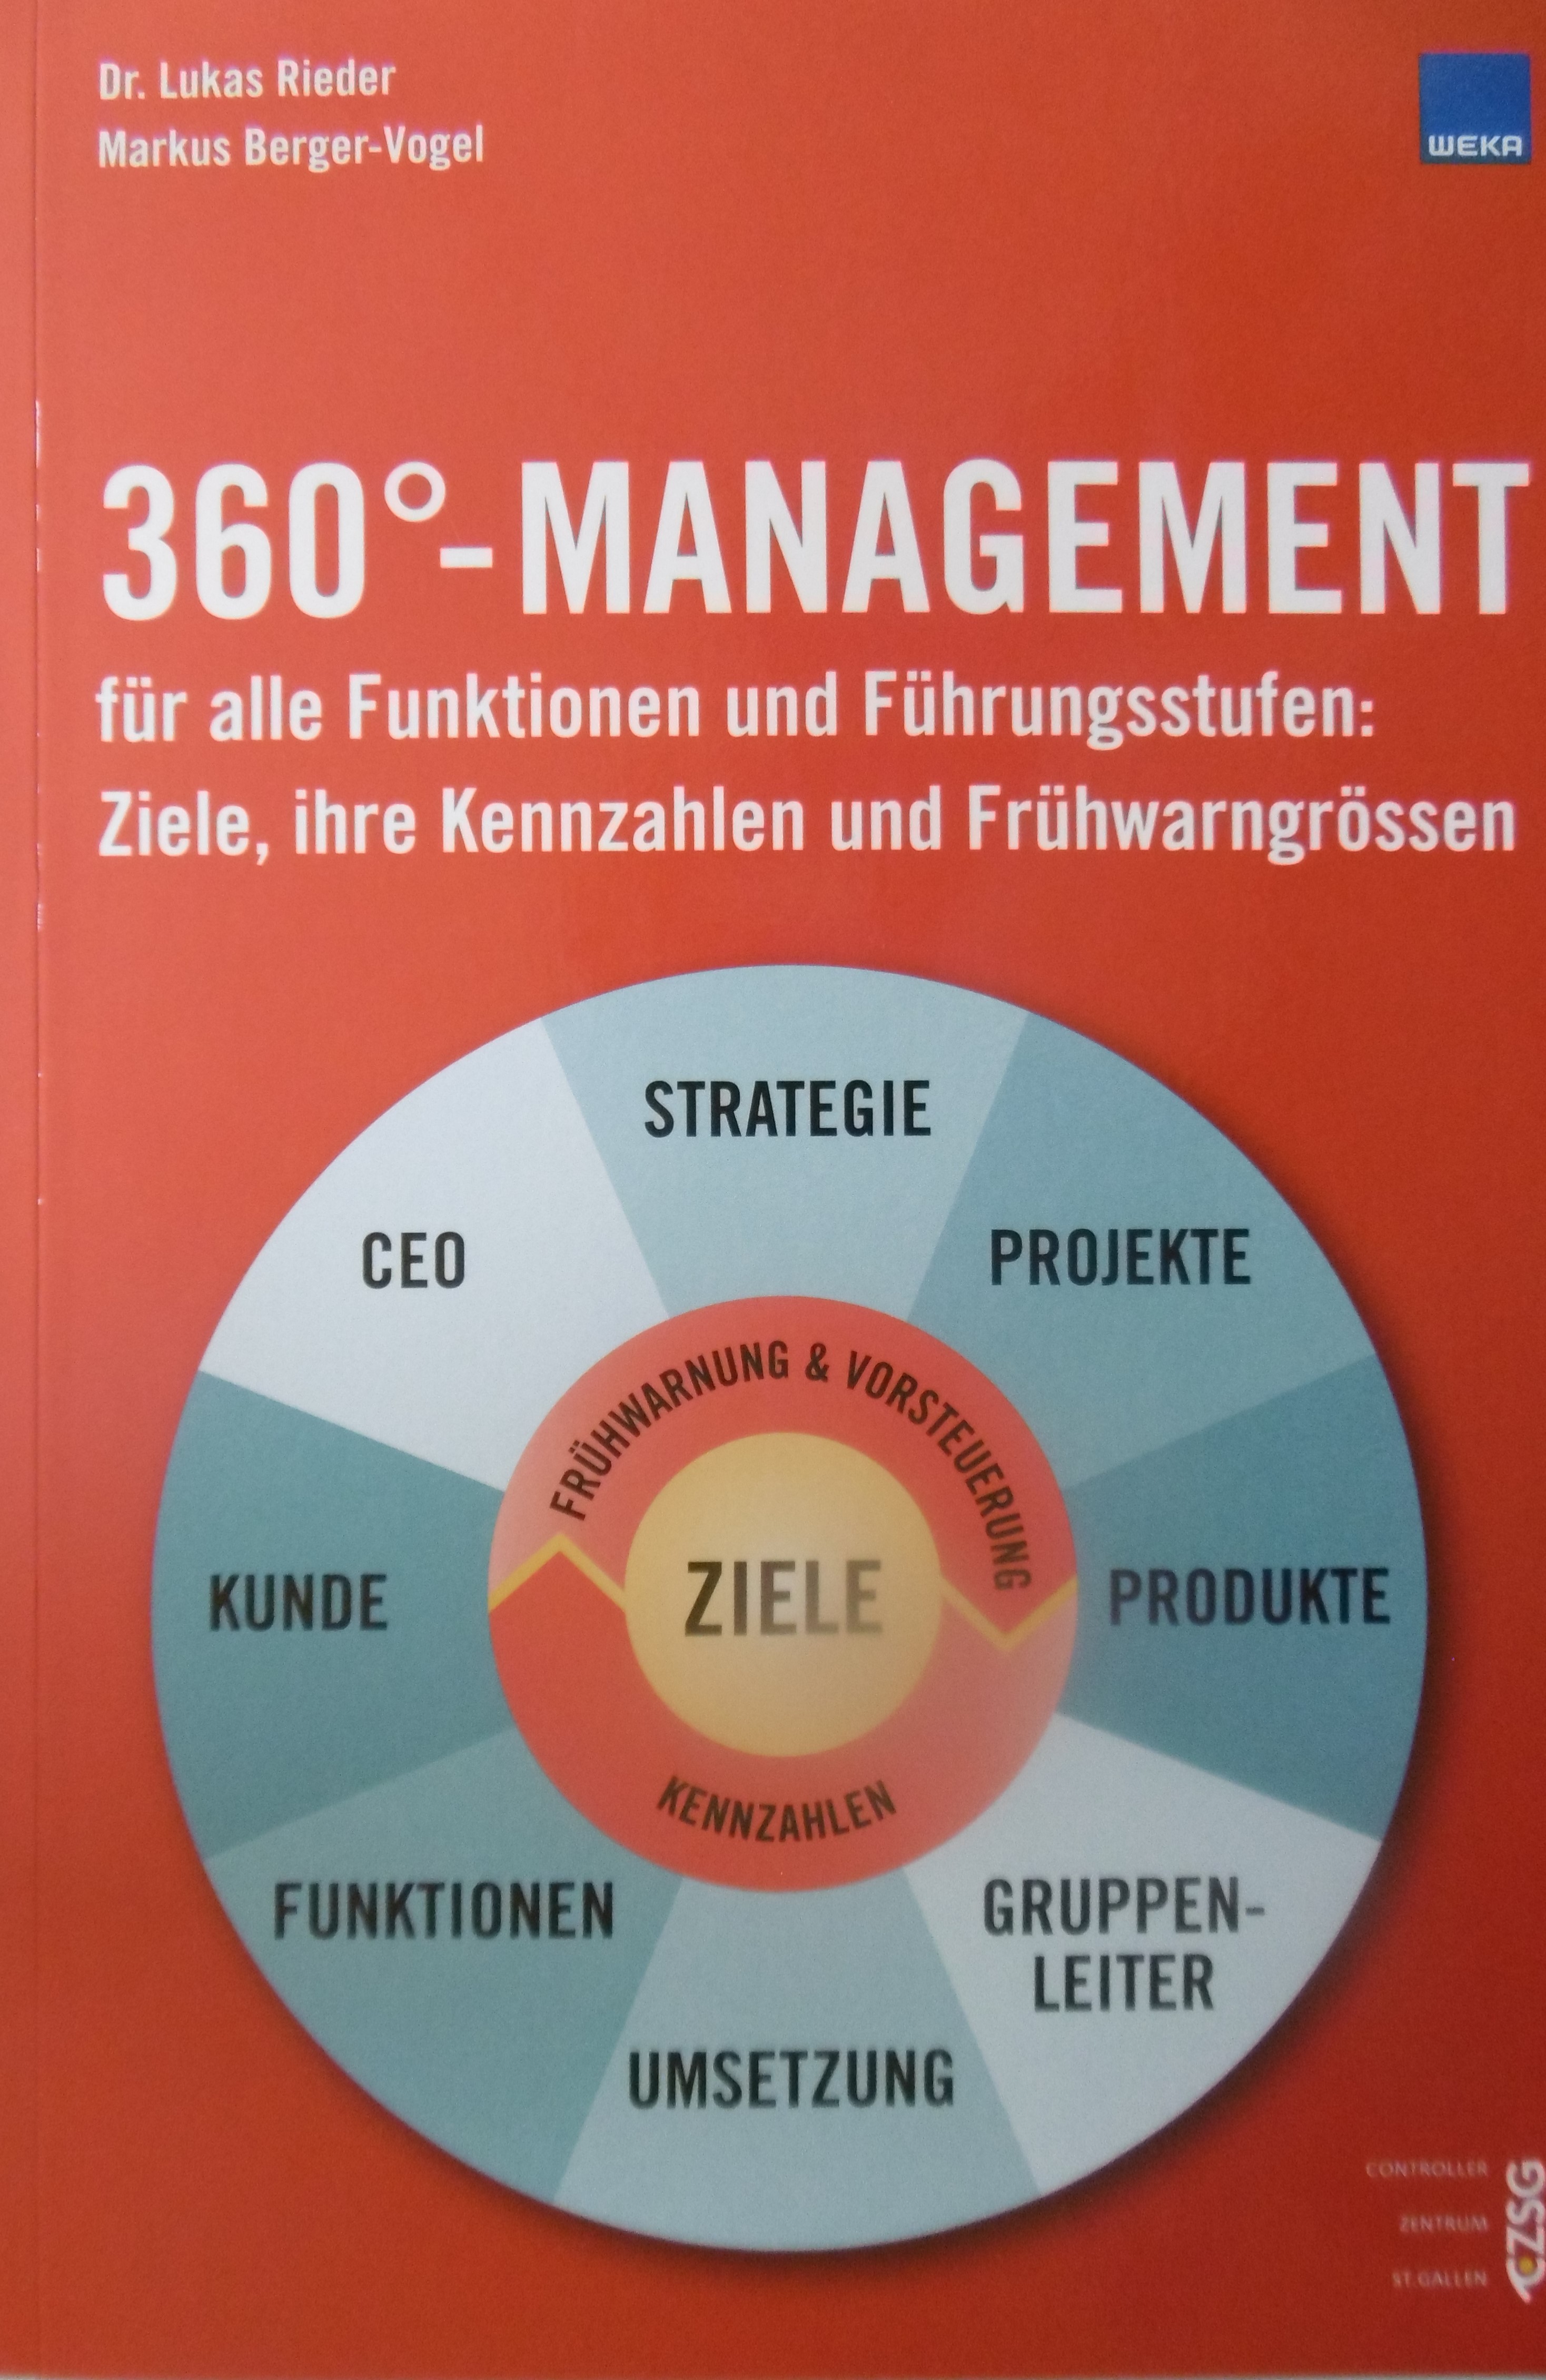 360°-Management (E-Book) für alle Funktionen und Führungsstufen